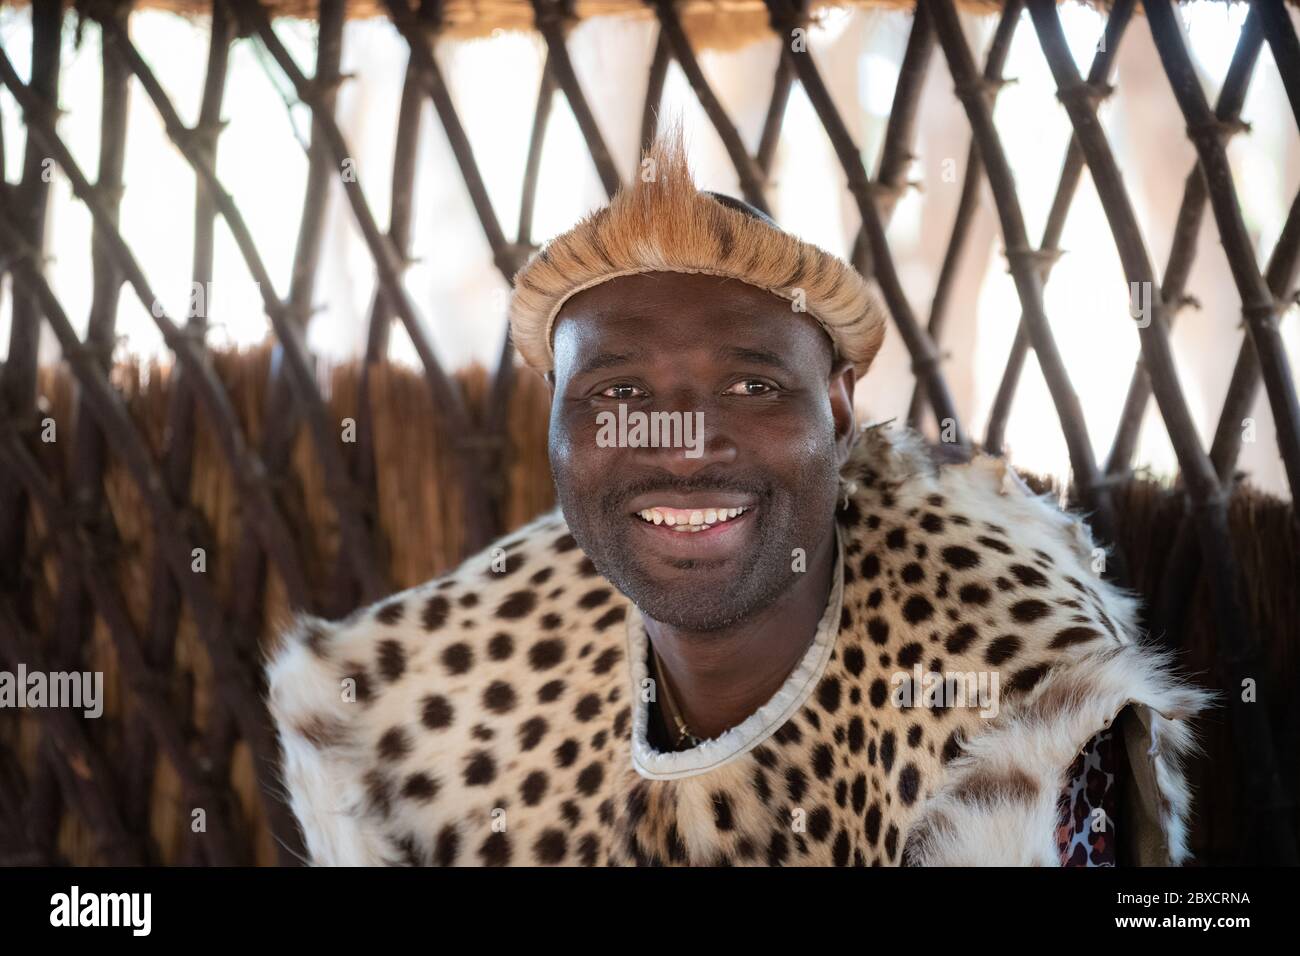 Das Kulturelle Erlebnis Im Zulu Village Stockfoto